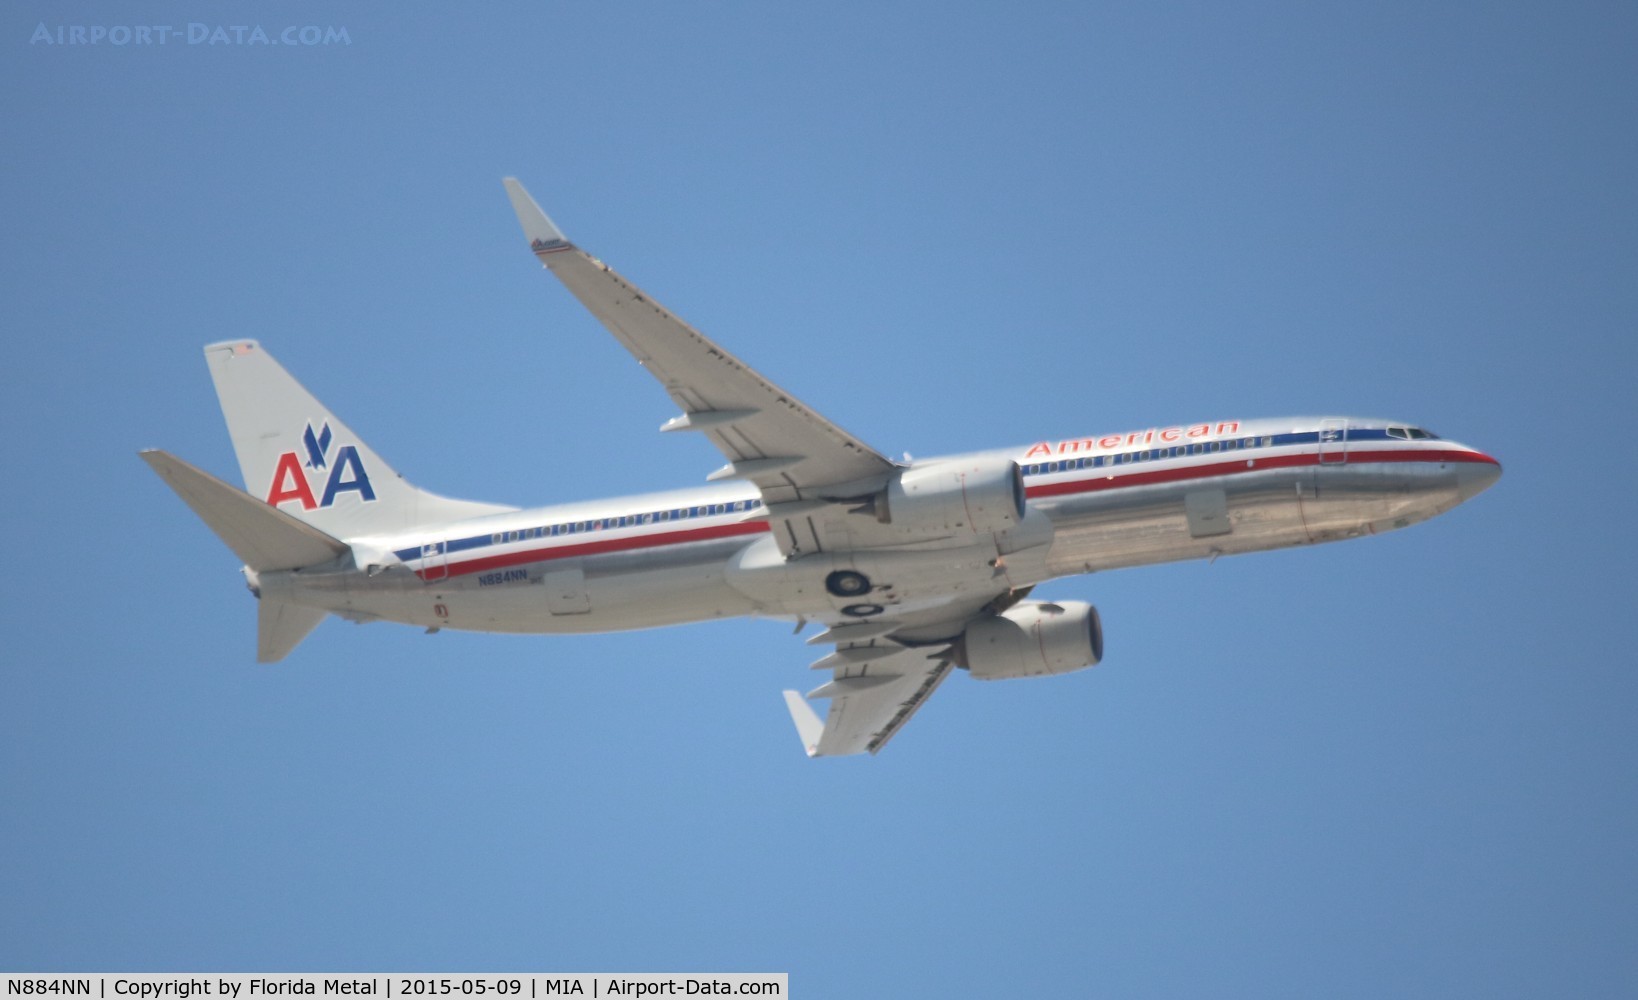 N884NN, 2012 Boeing 737-823 C/N 33222, American